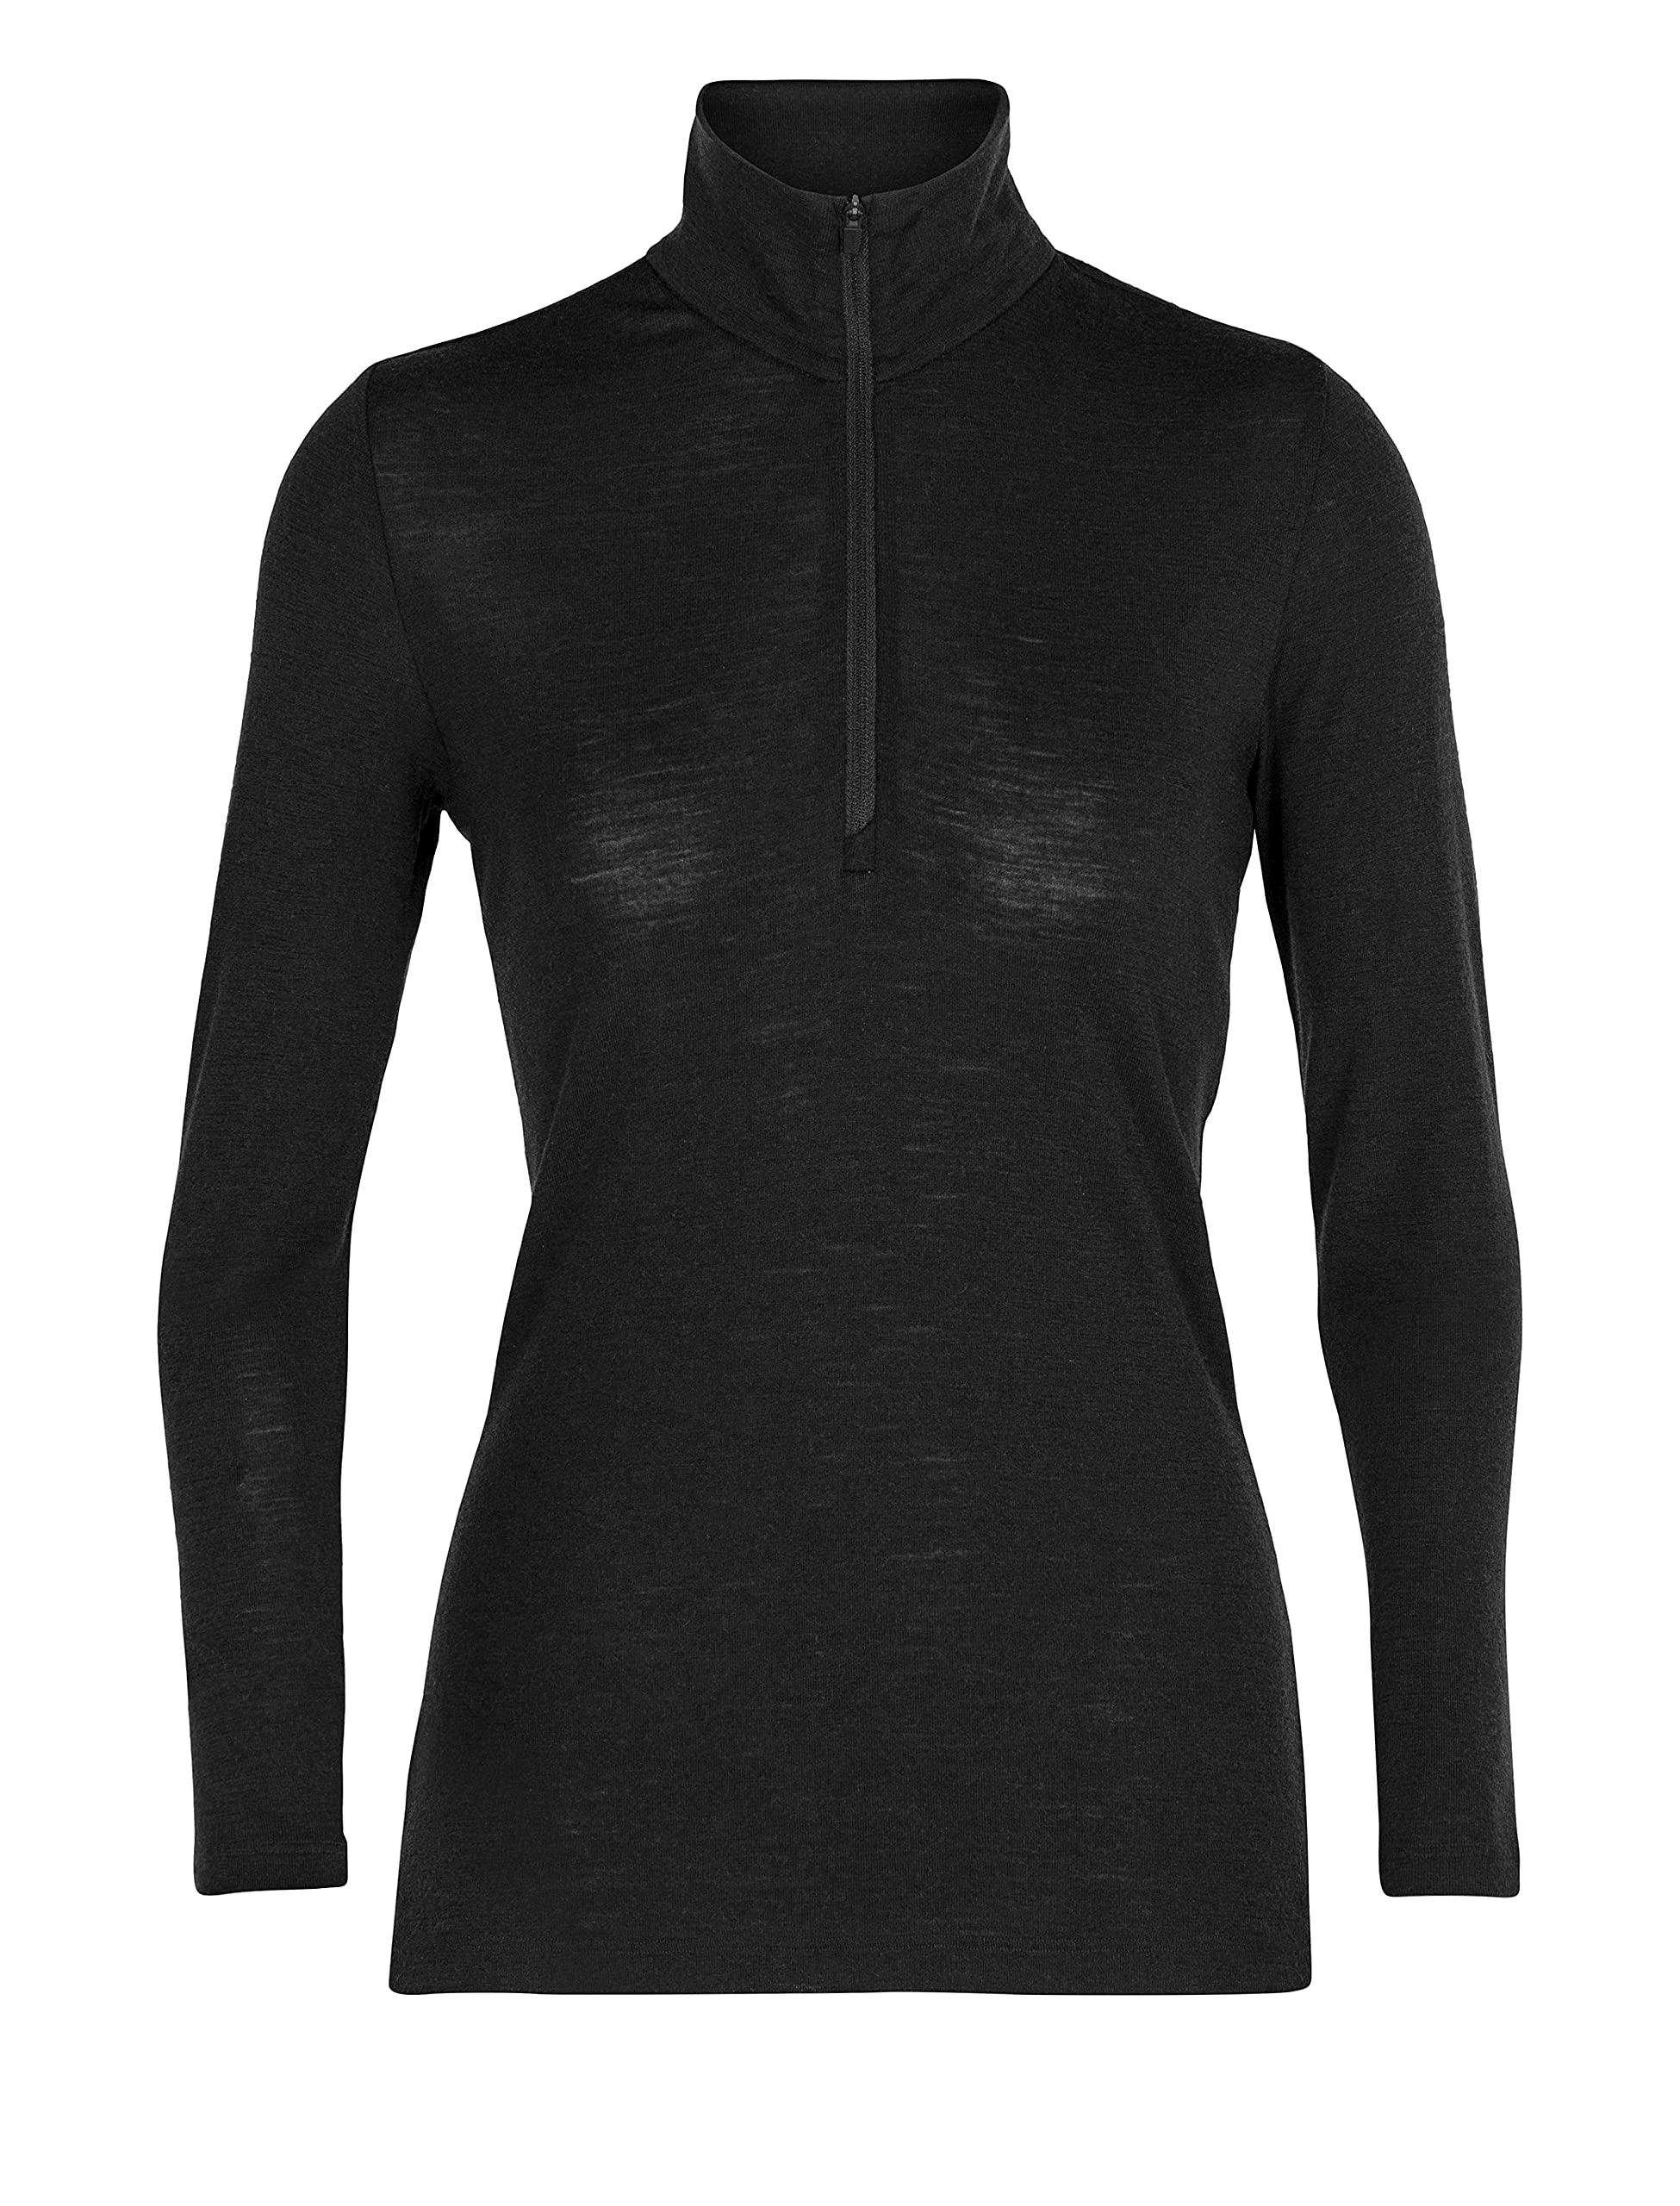 Icebreaker Damen 100% Merino Wolle Everyday Langarmshirt mit halben Reißverschluss - 175 Ultraleichtes Material - Schwarz, S